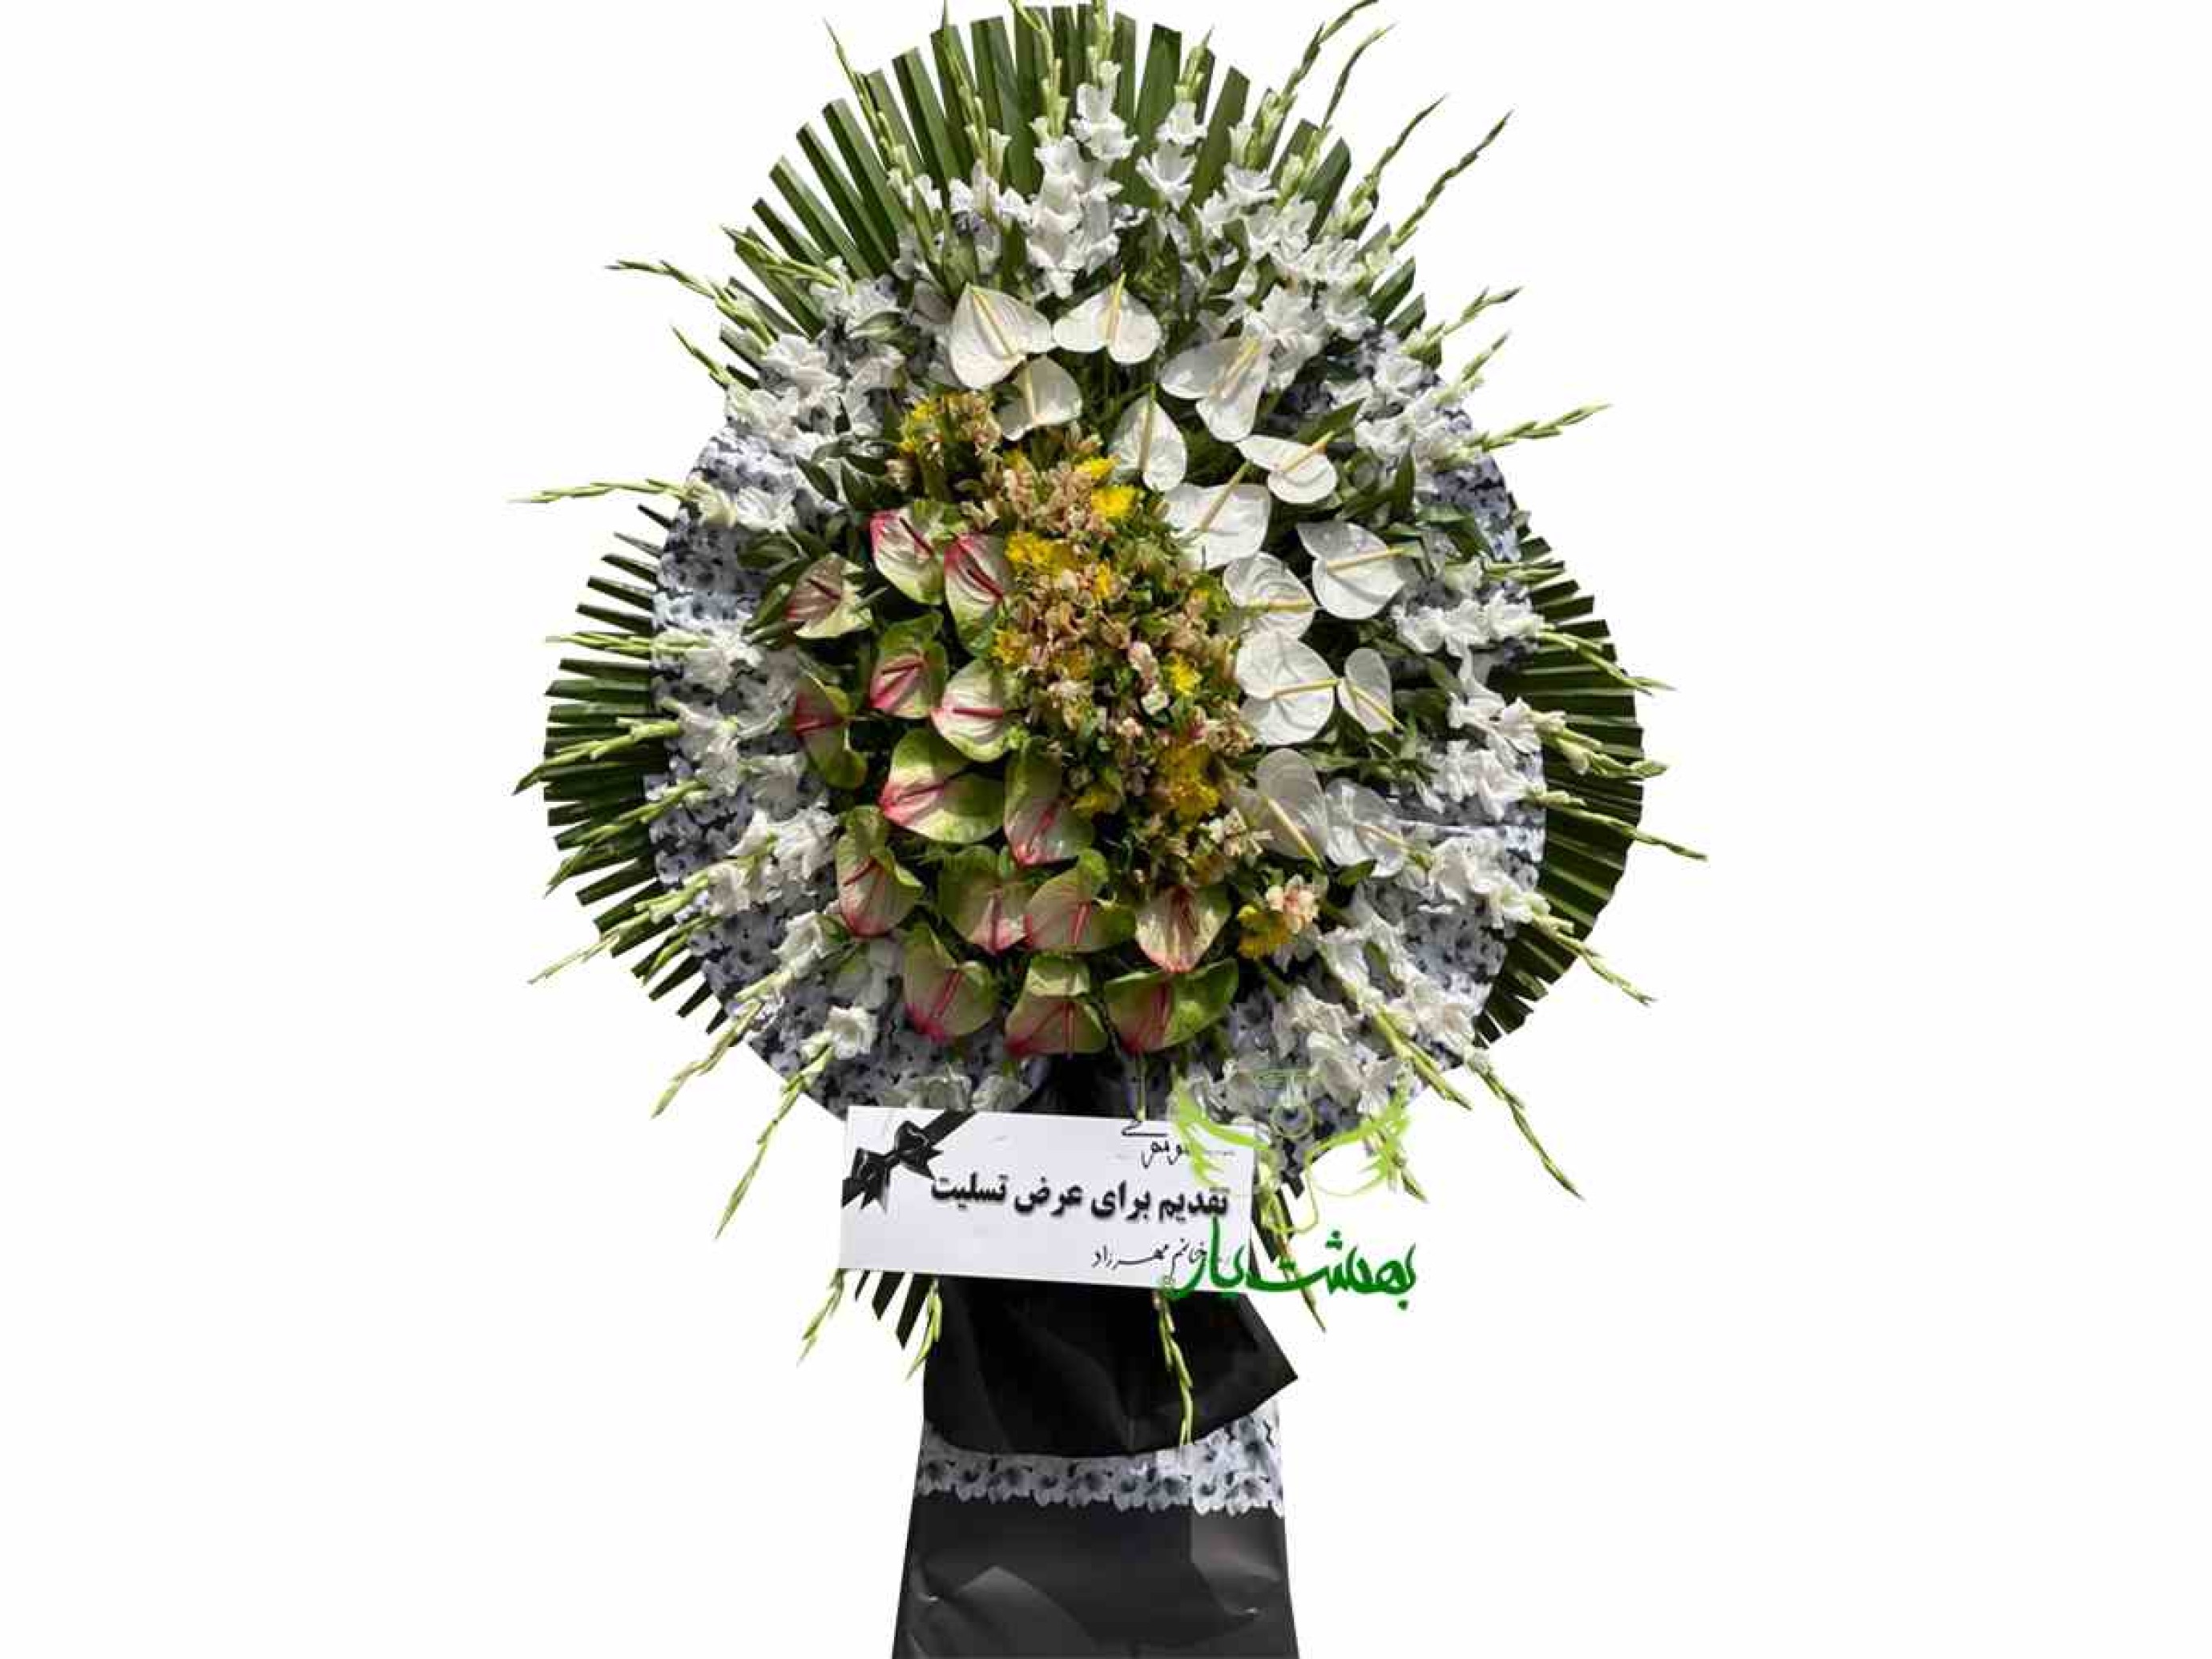  خرید اینترنتی انواع تاج گل یک طبقه با ارسال رایگان به بهشت زهرا در بهشت یار 